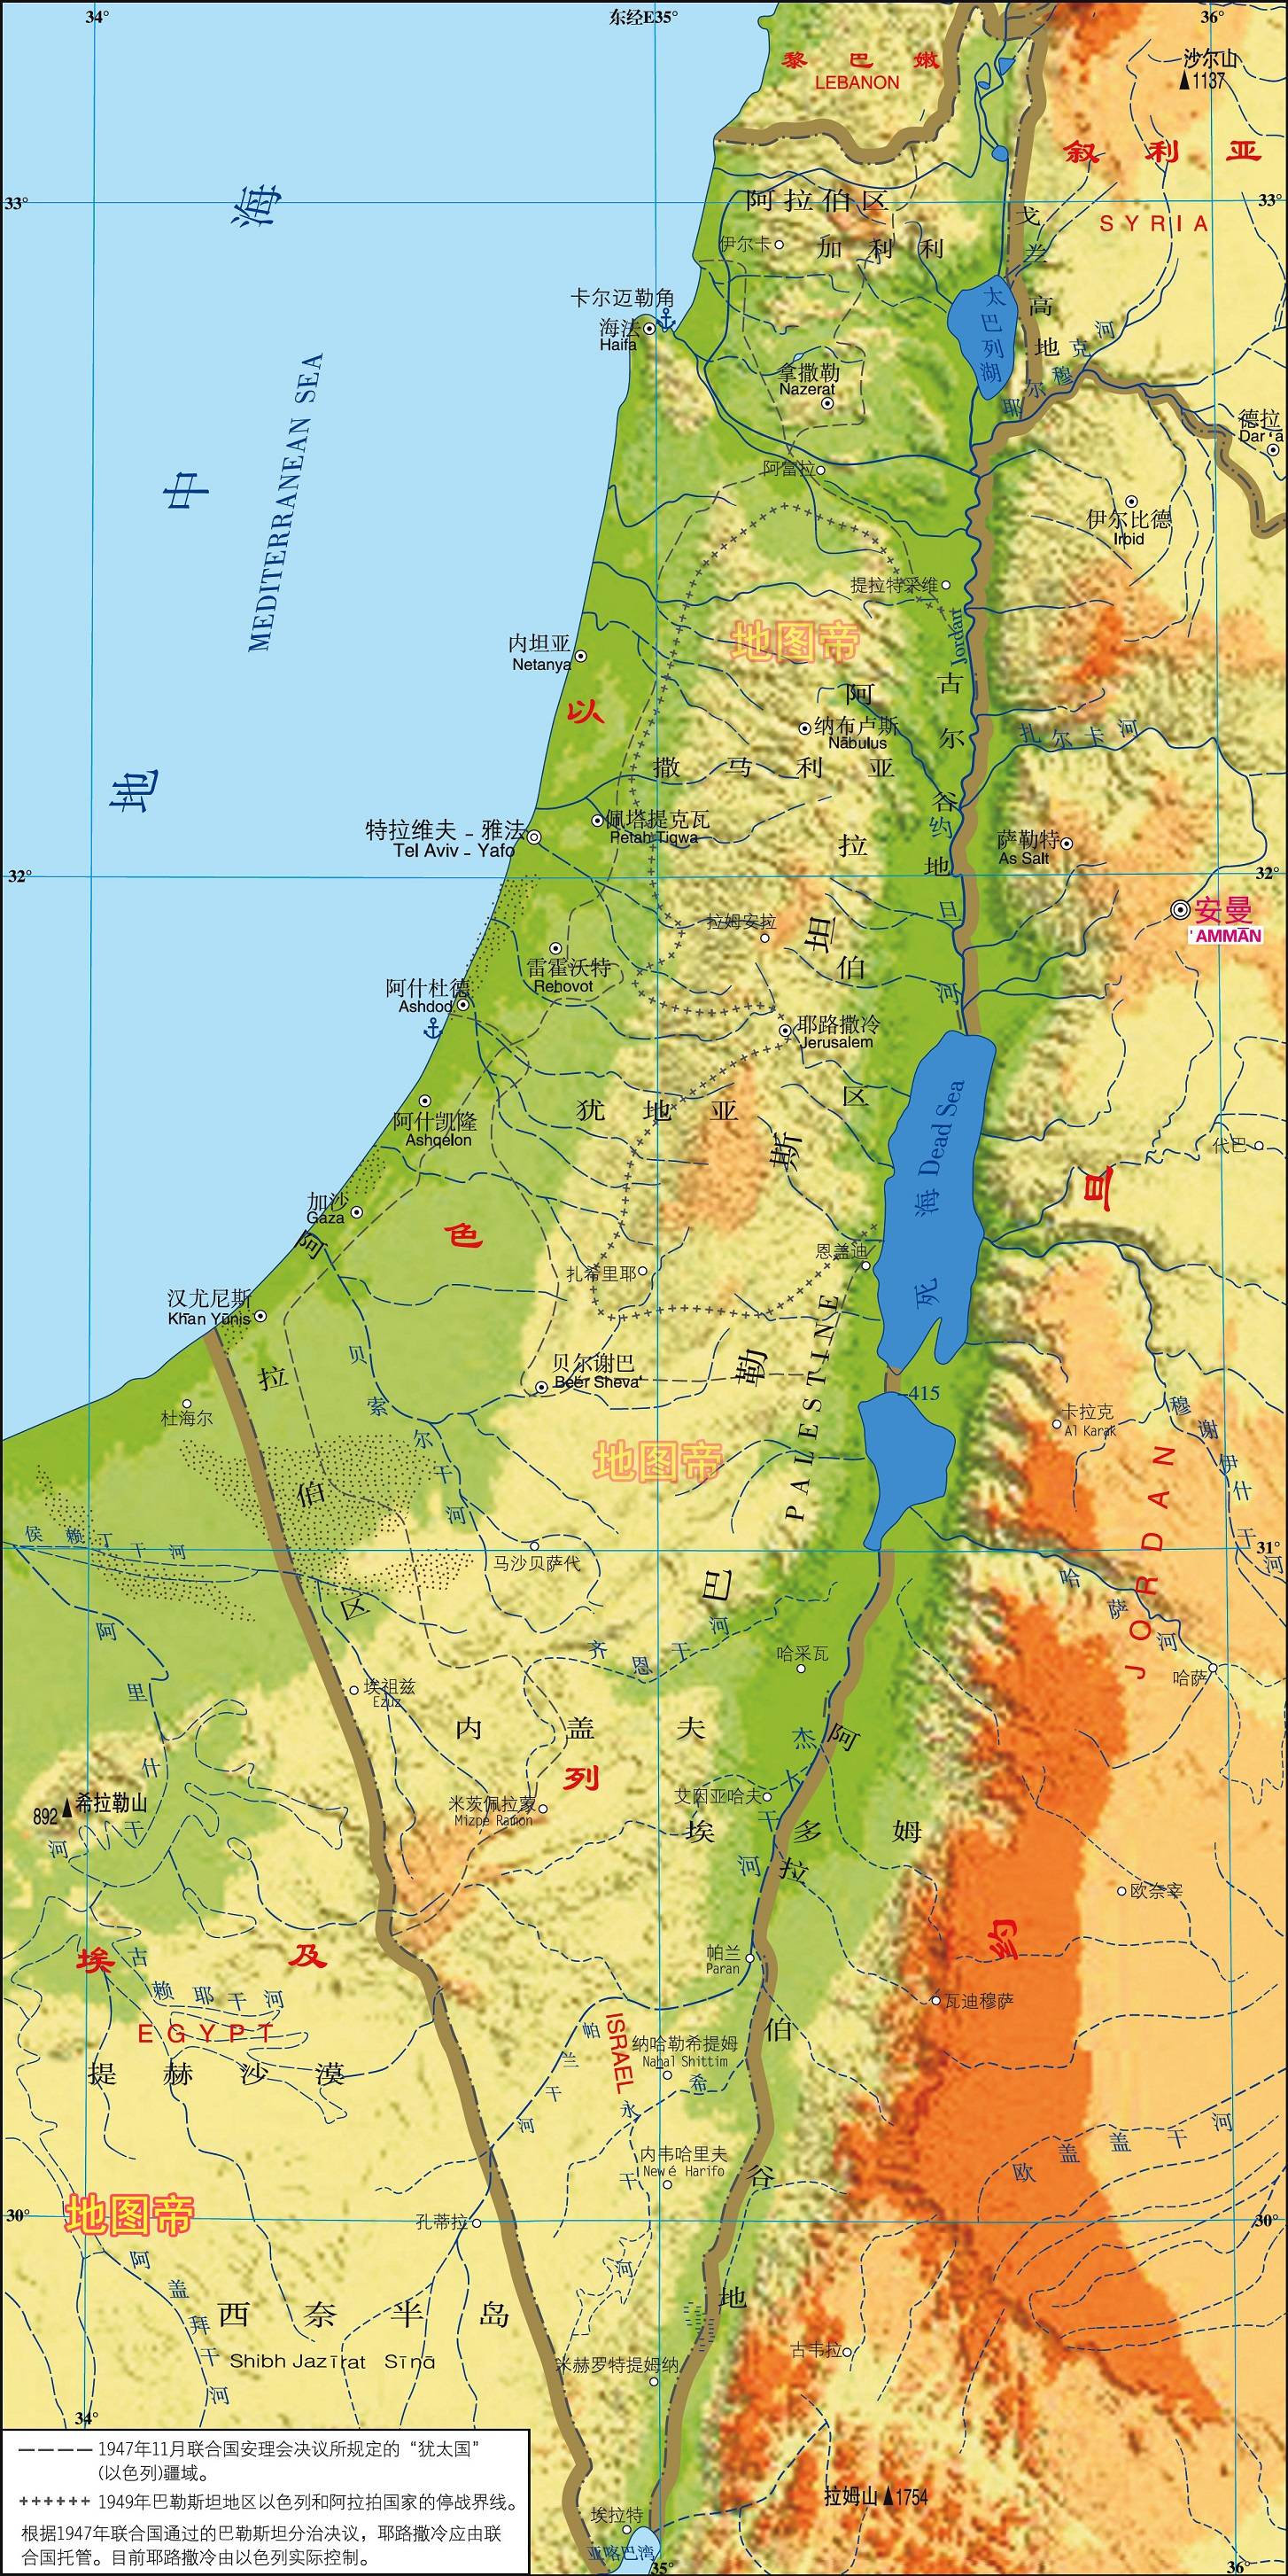 以色列和摩洛哥建交,为何西撒哈拉躺枪?和美国有关